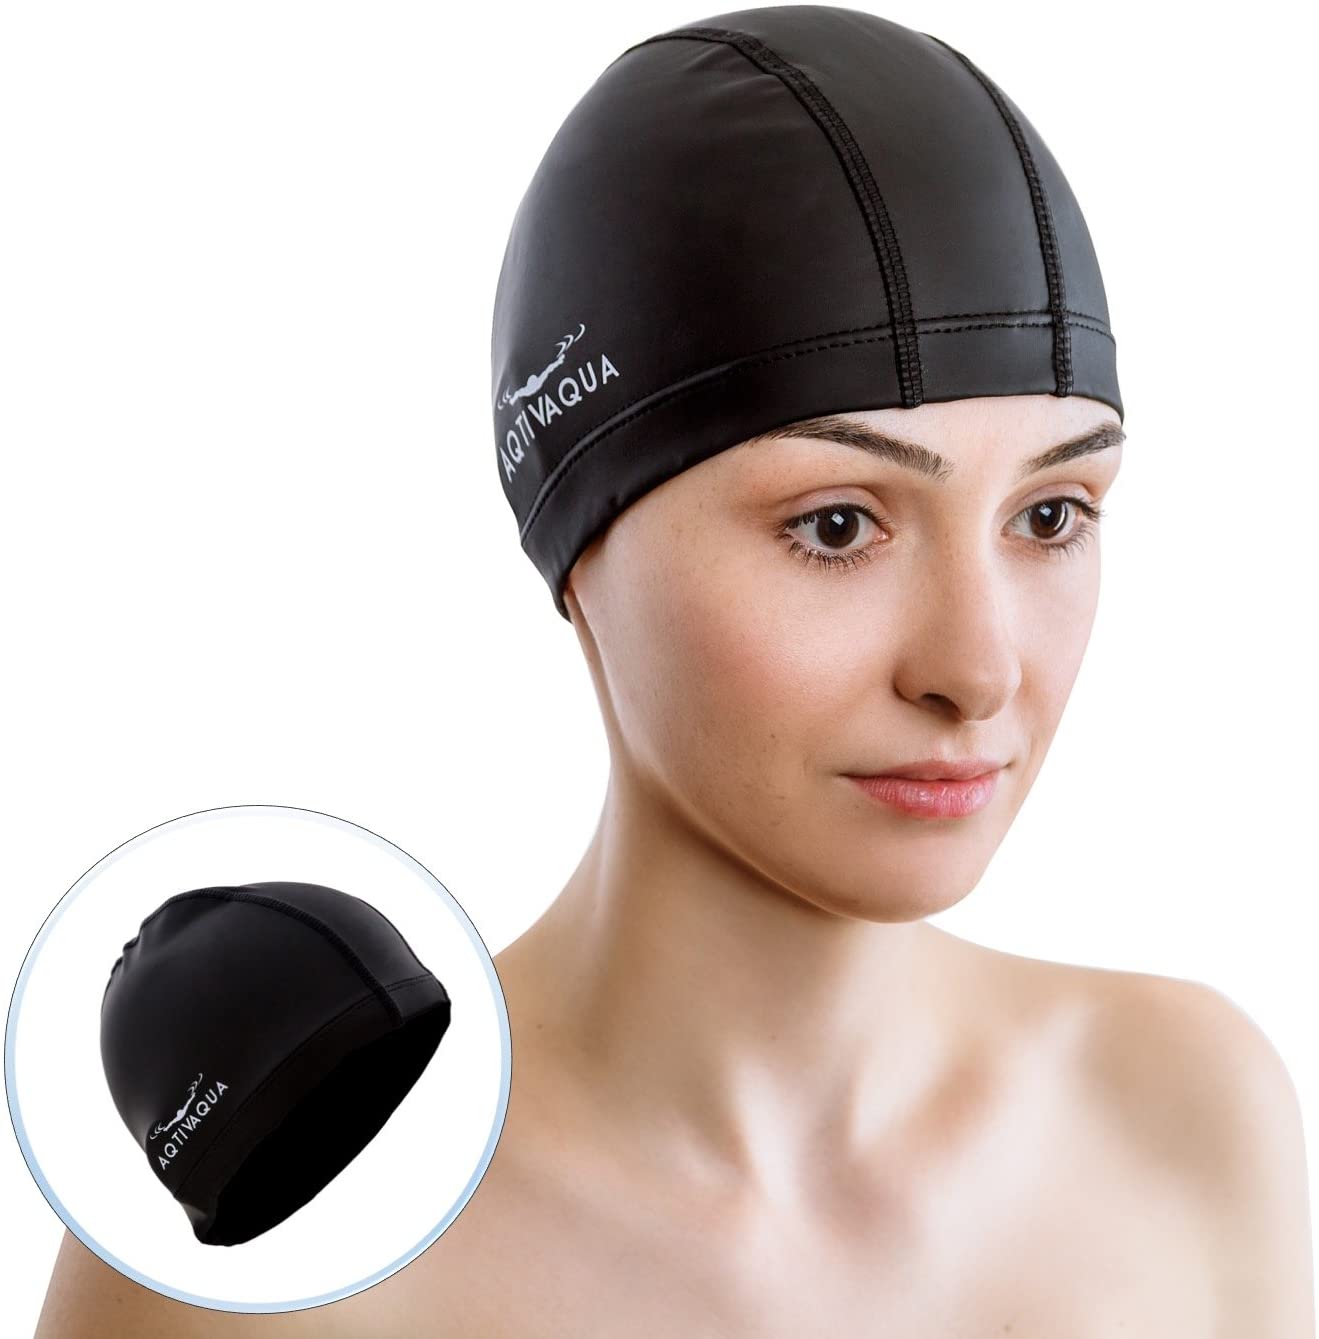 AqtivAqua Spandex Swimming Cap with Protective Layer // Swim Cap for ...